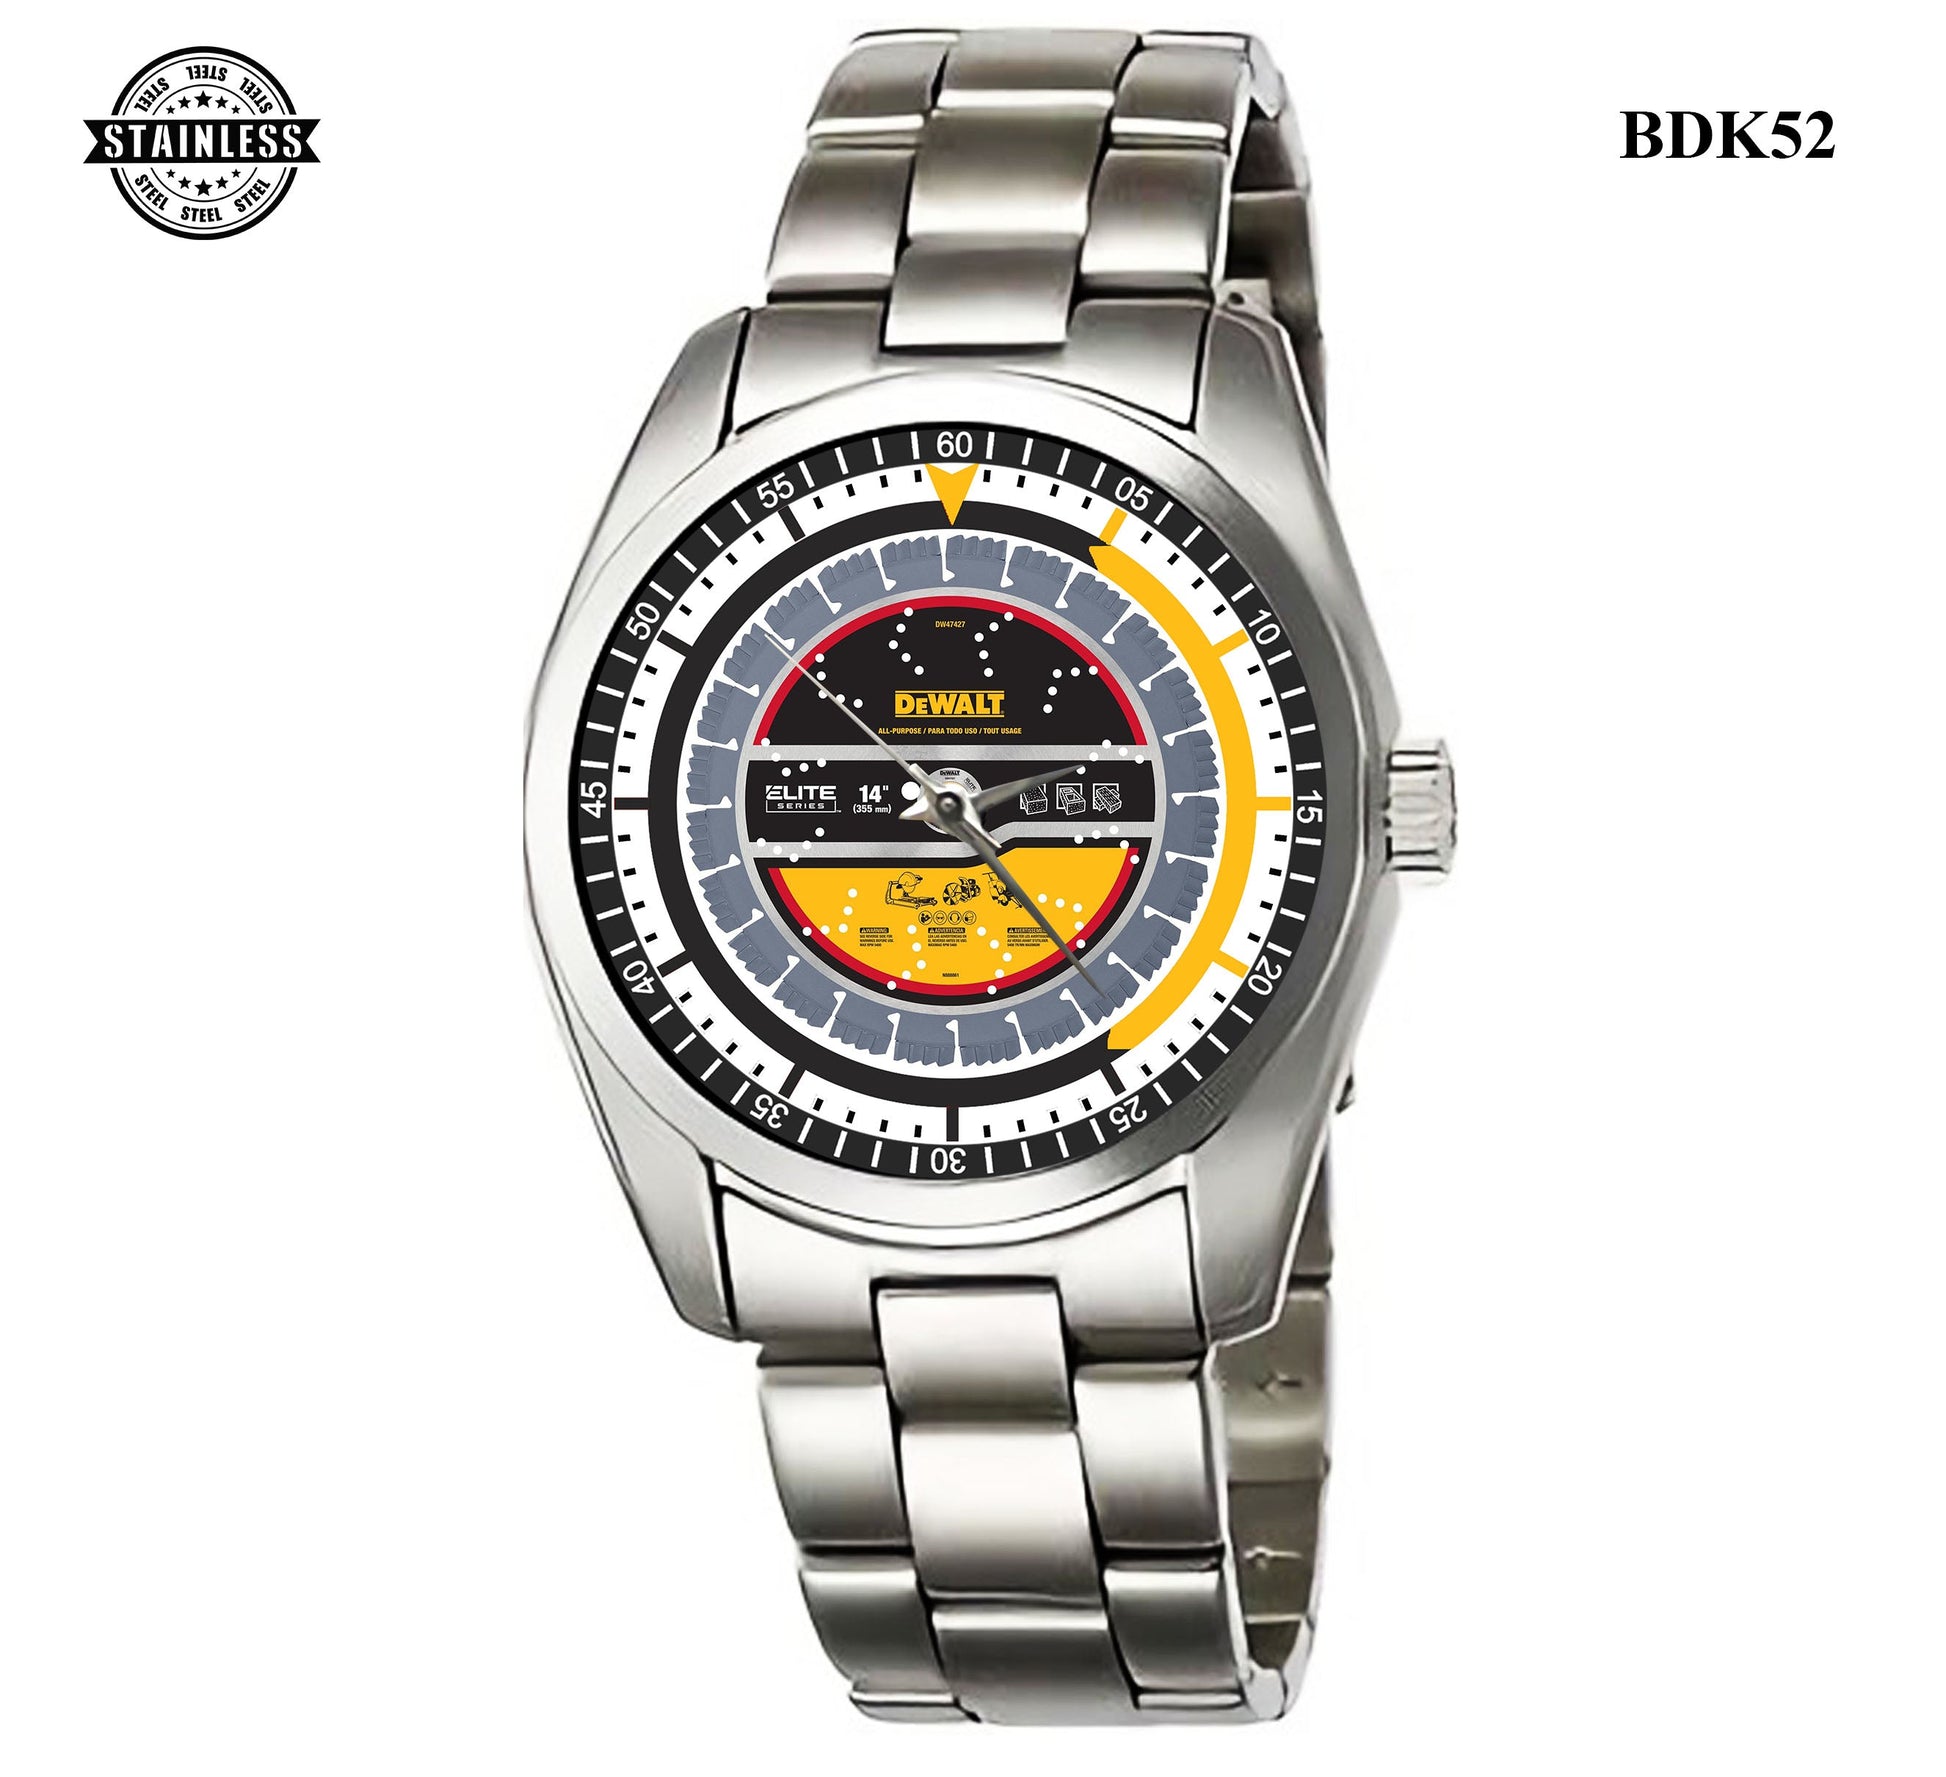 Dewalt dw47427 Watches Bdk52